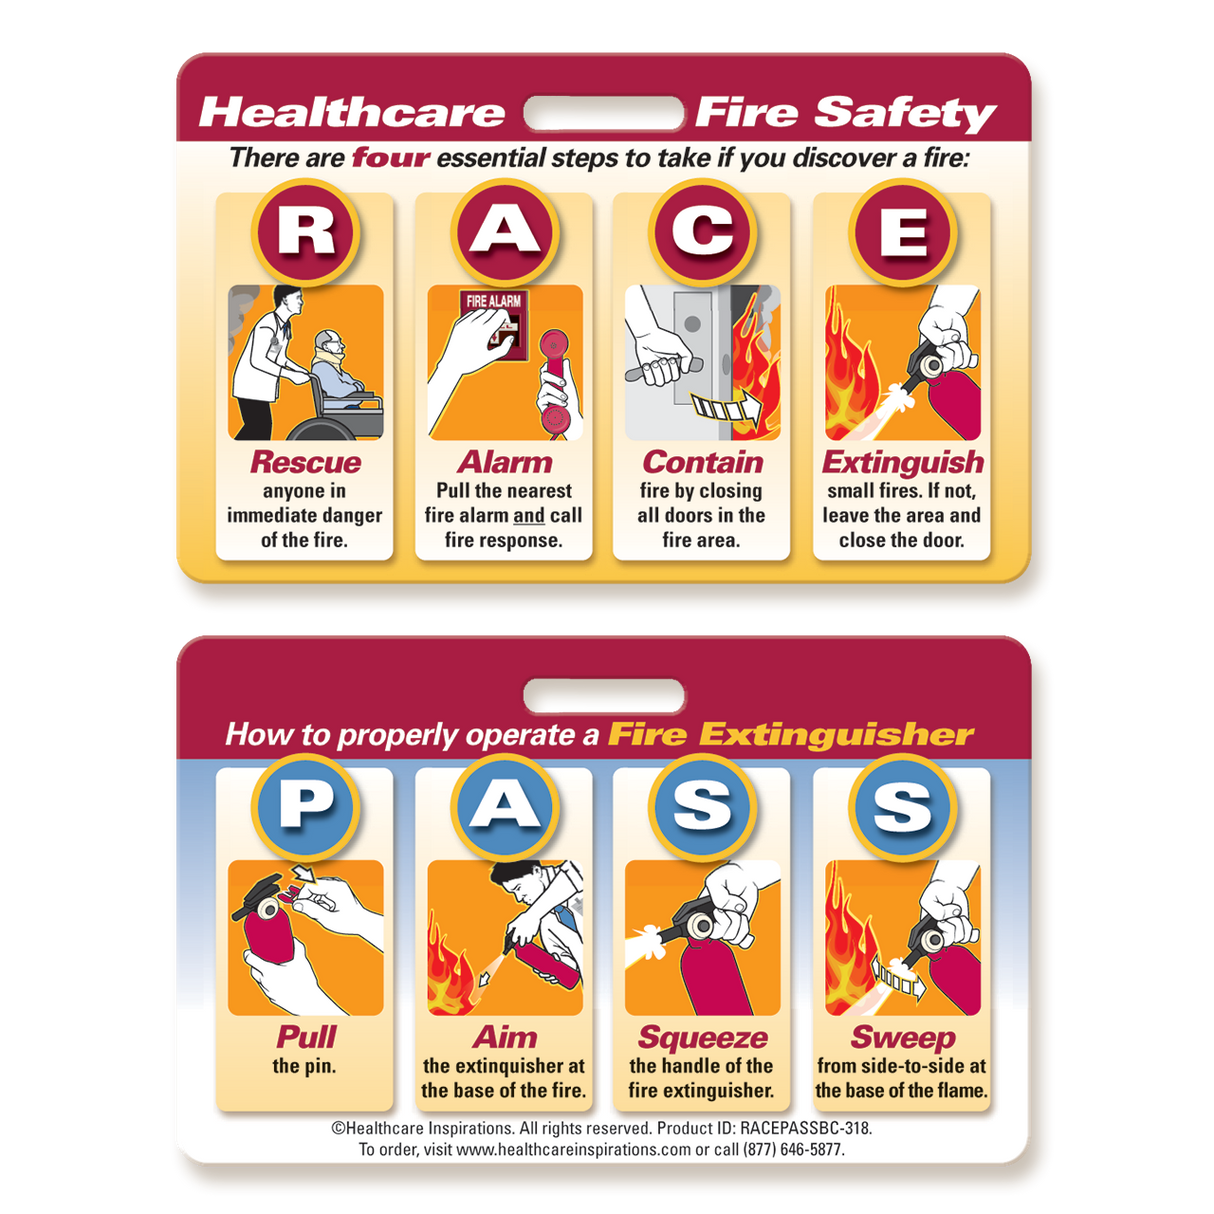 Hospital Fire Safety, RACE/PASS Race Pass Fire Safety Badge Card, Fire Safety Education Card